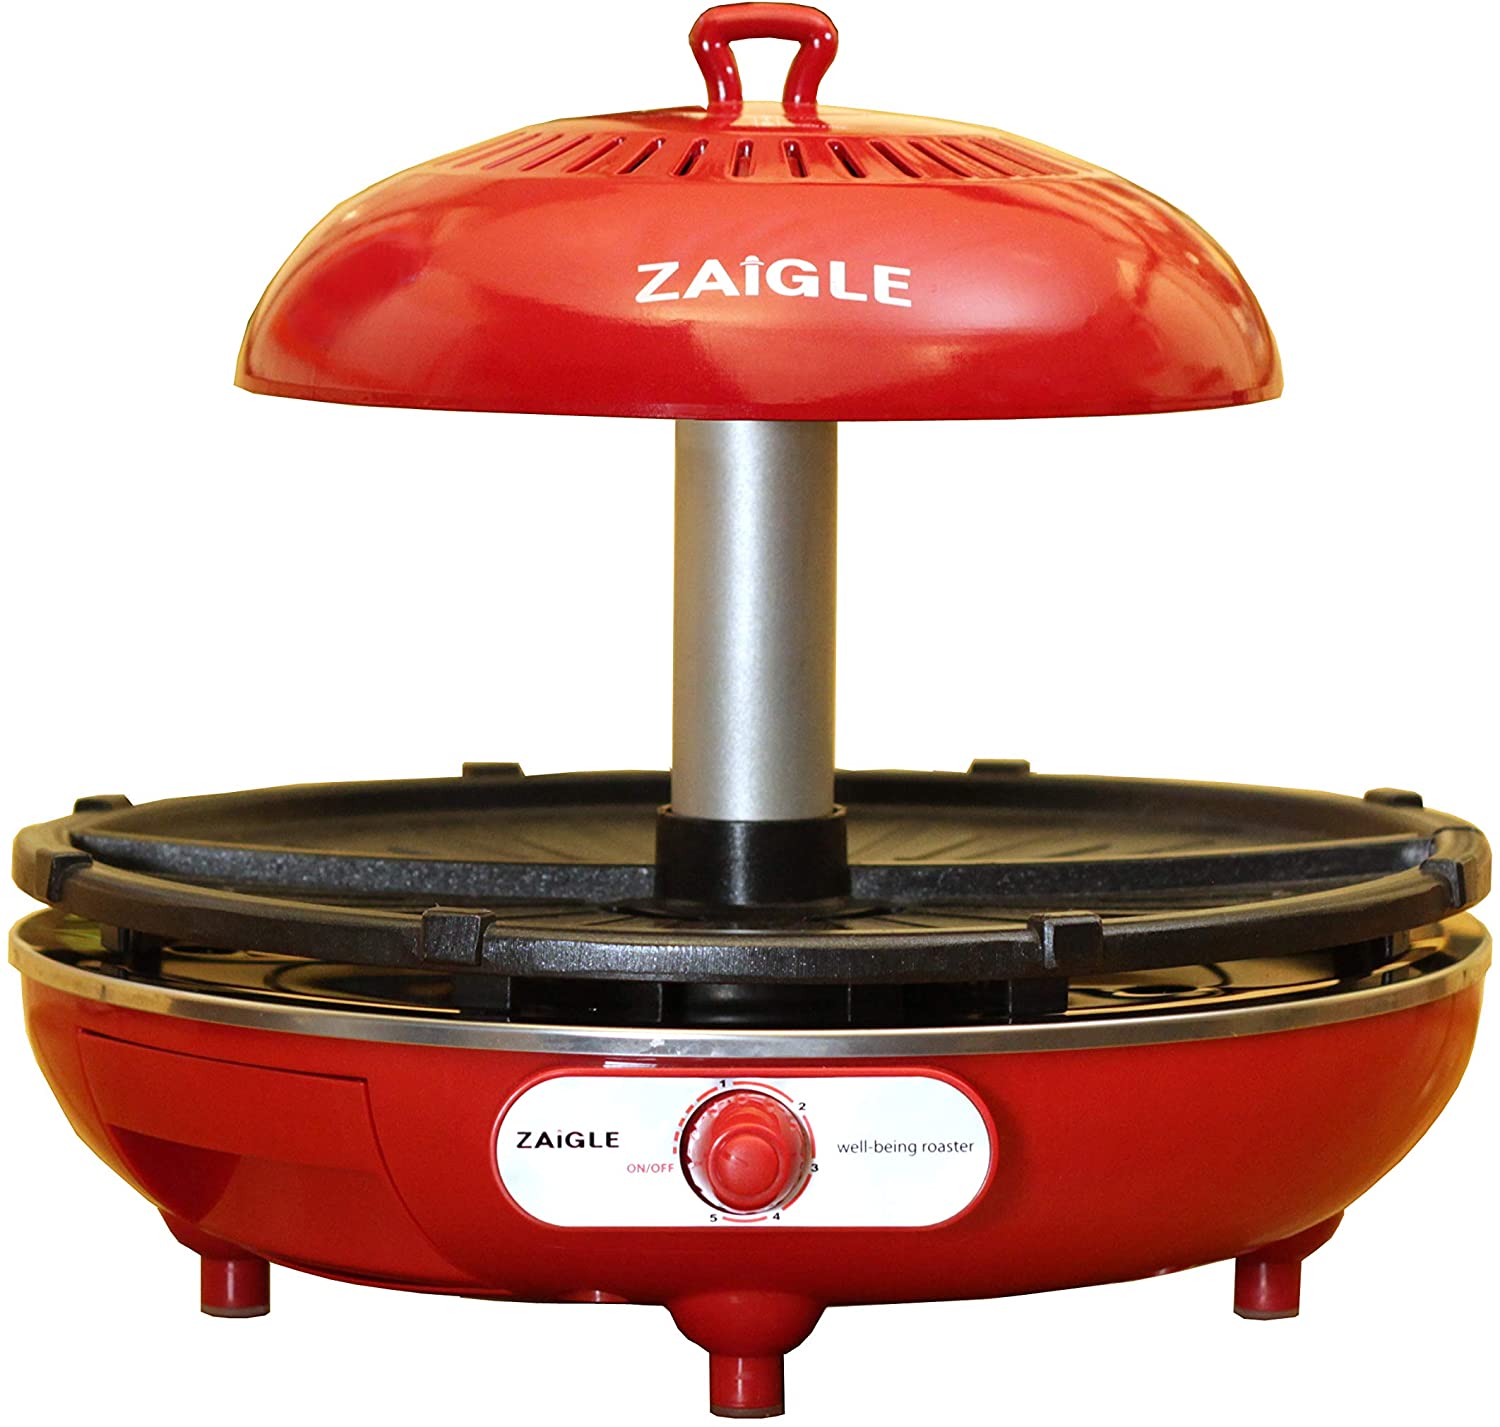 日本代購 空運 ZAIGLE i NC-350 紅外線 無油煙 電烤盤 電烤爐 2段火力 減油 無油煙 油切